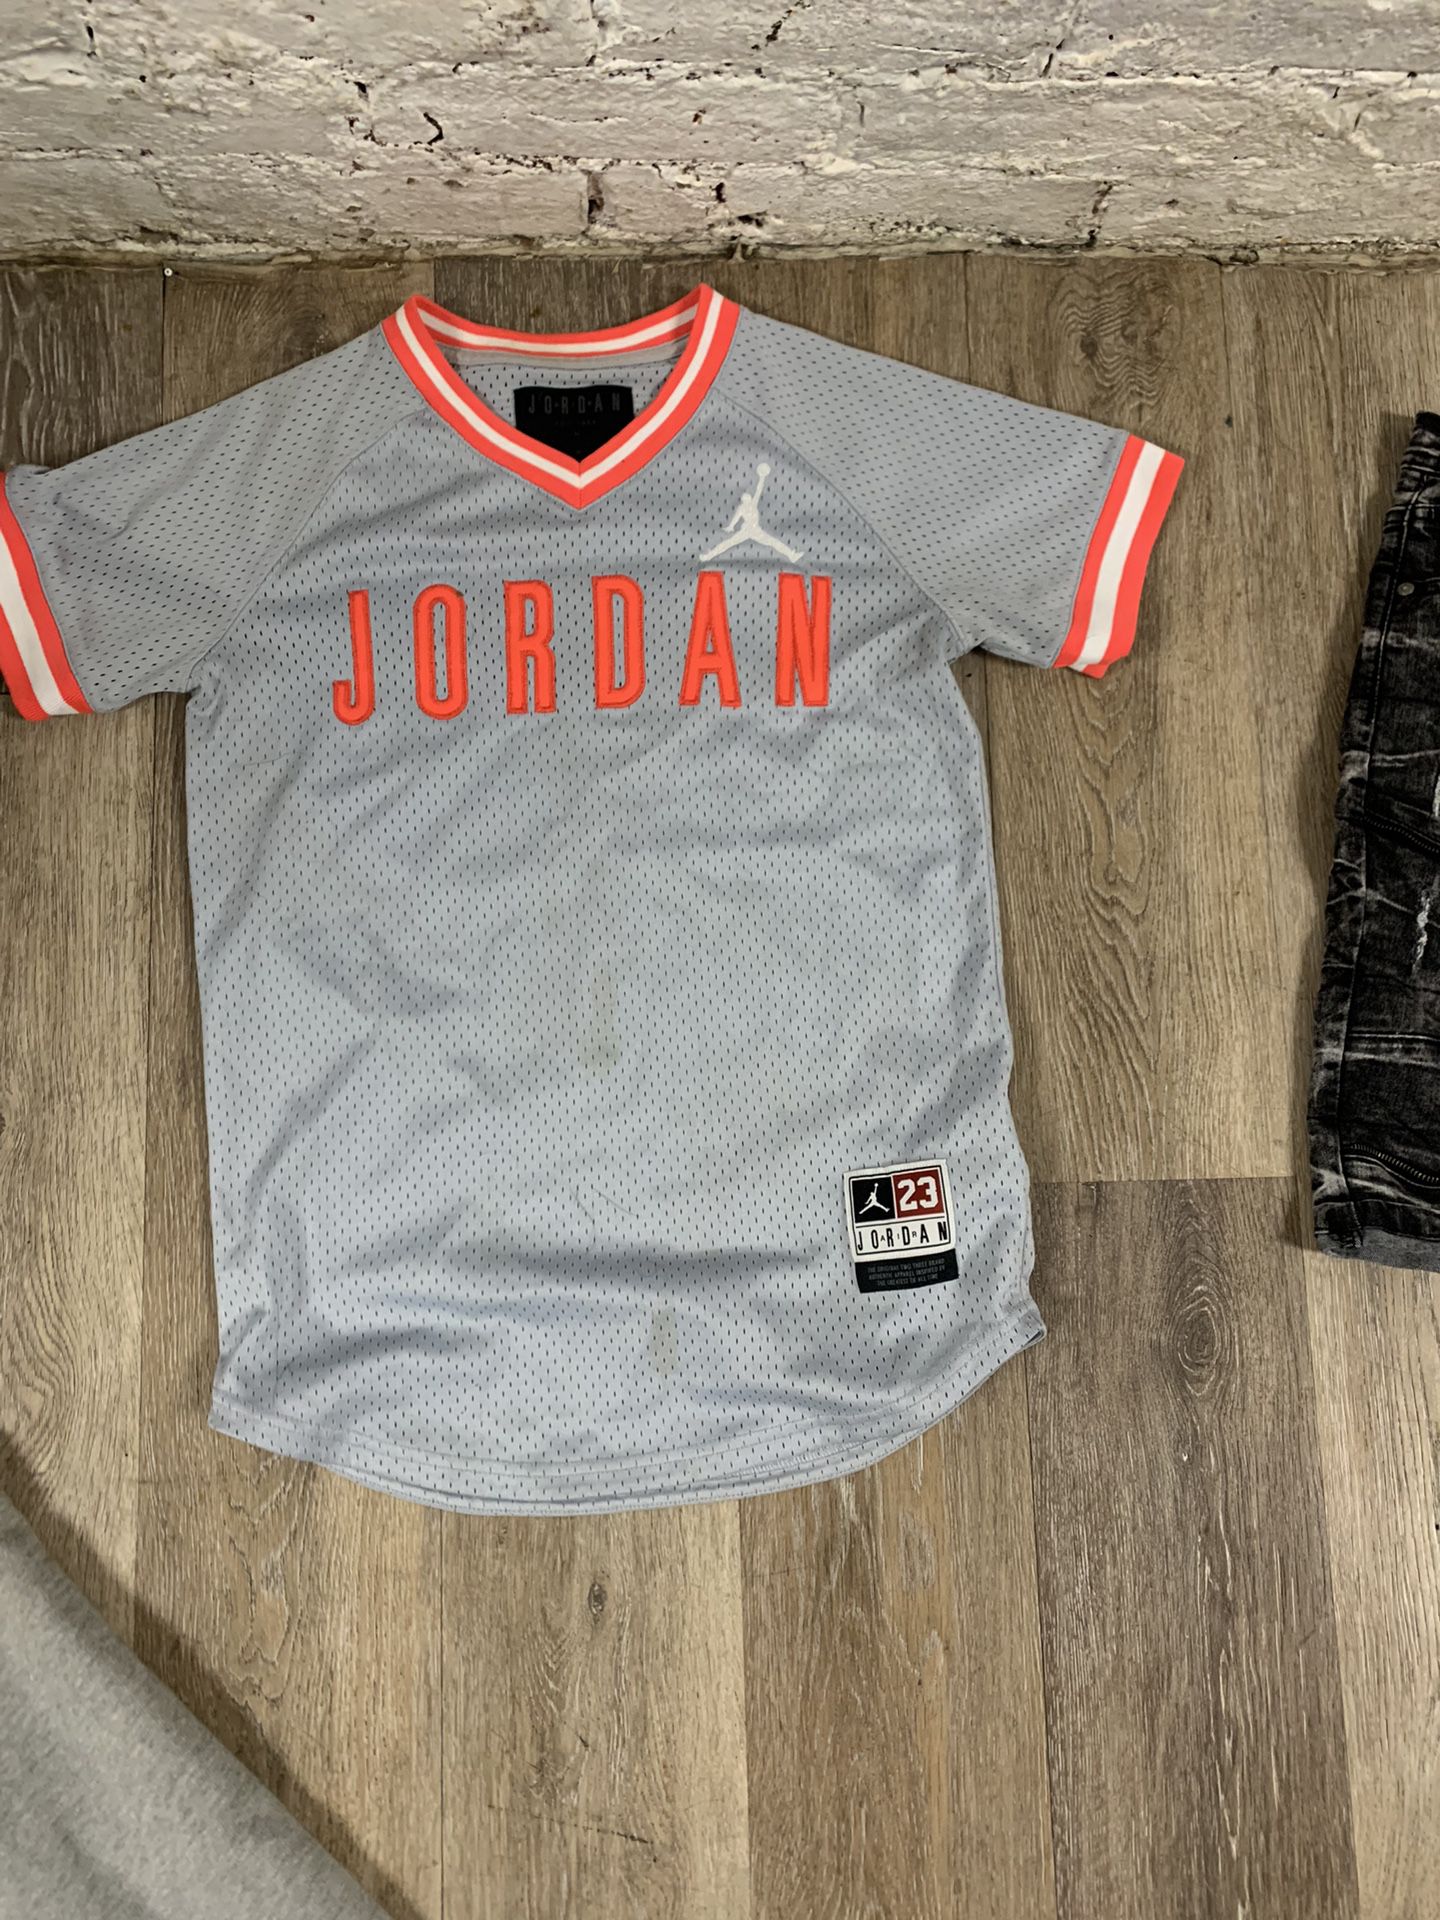 Jordan Jersey for Sale Allentown, PA OfferUp